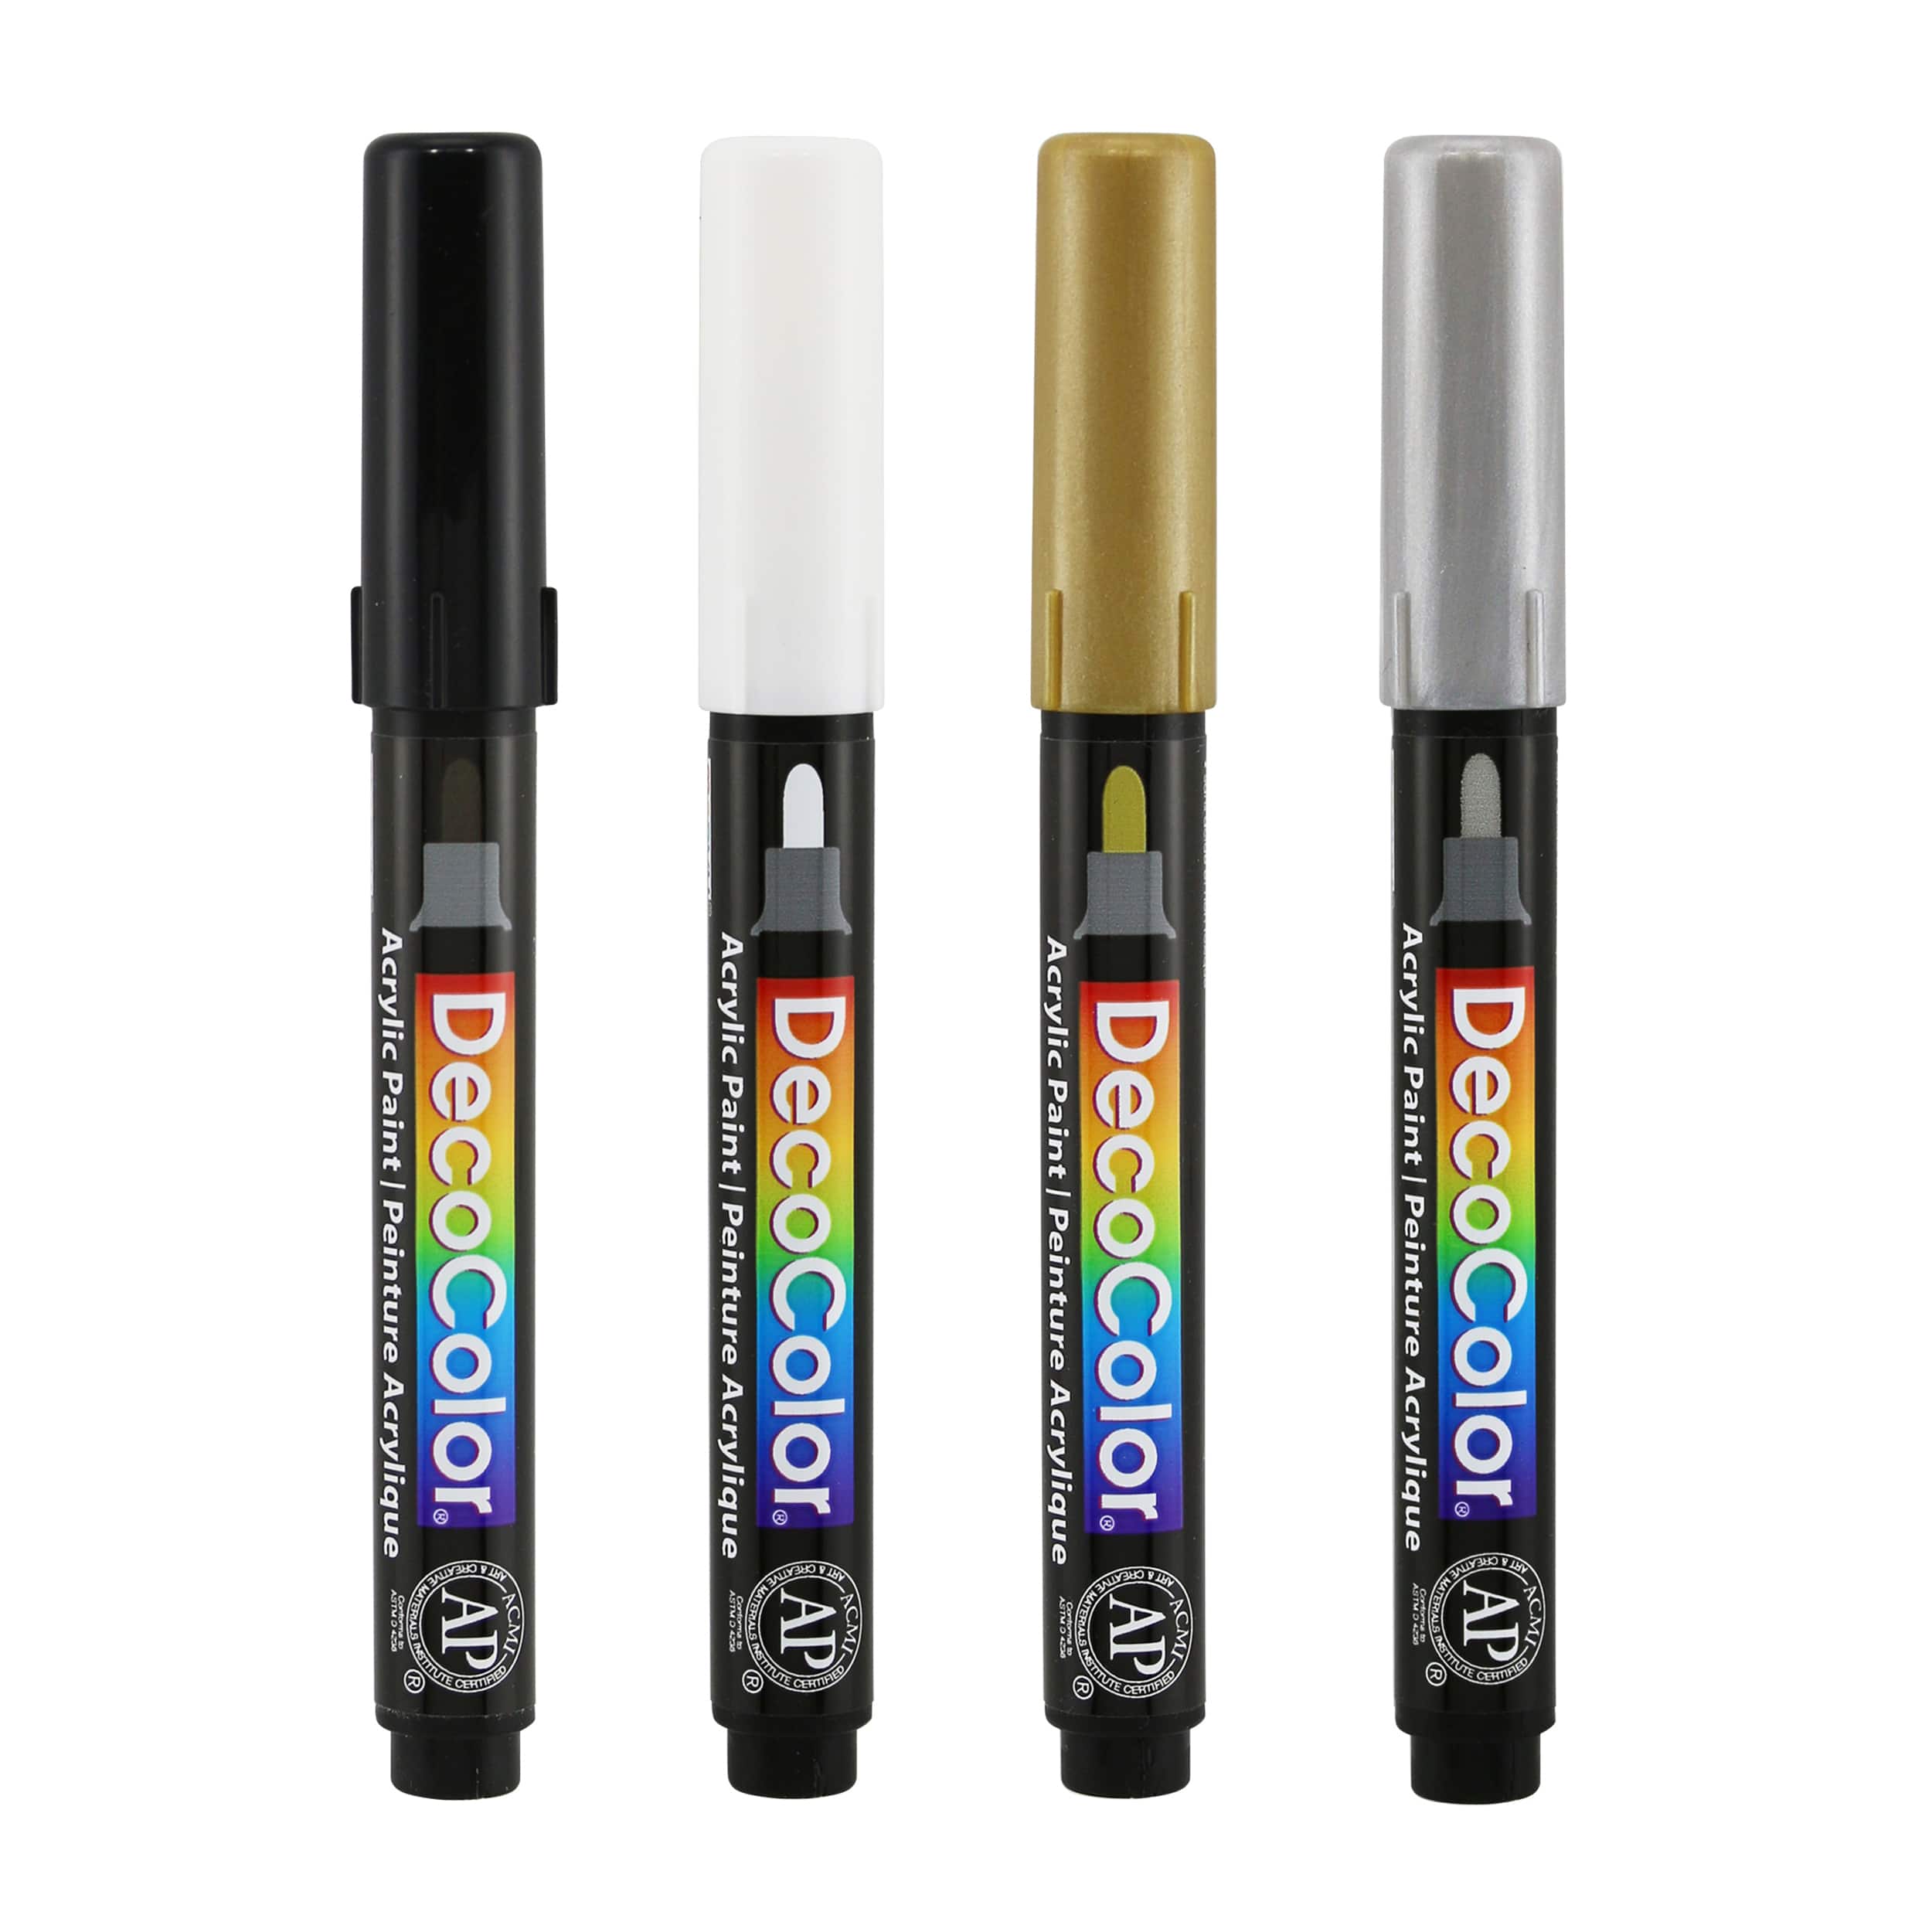 DecoColor® Fine Tip Acrylic Paint Pen Marker Set